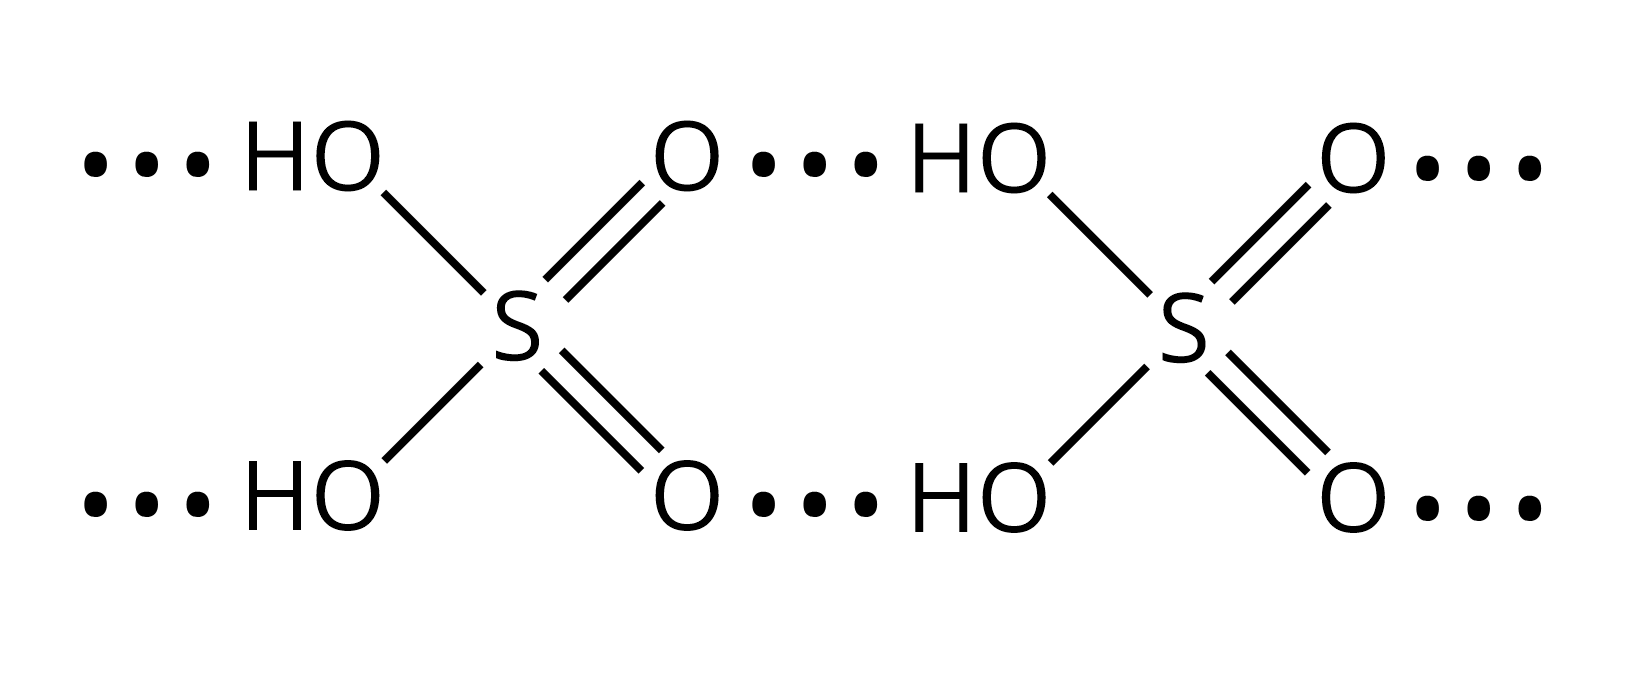 Liên kết hydrogen giữa các phân tử sulfuric acid olm.